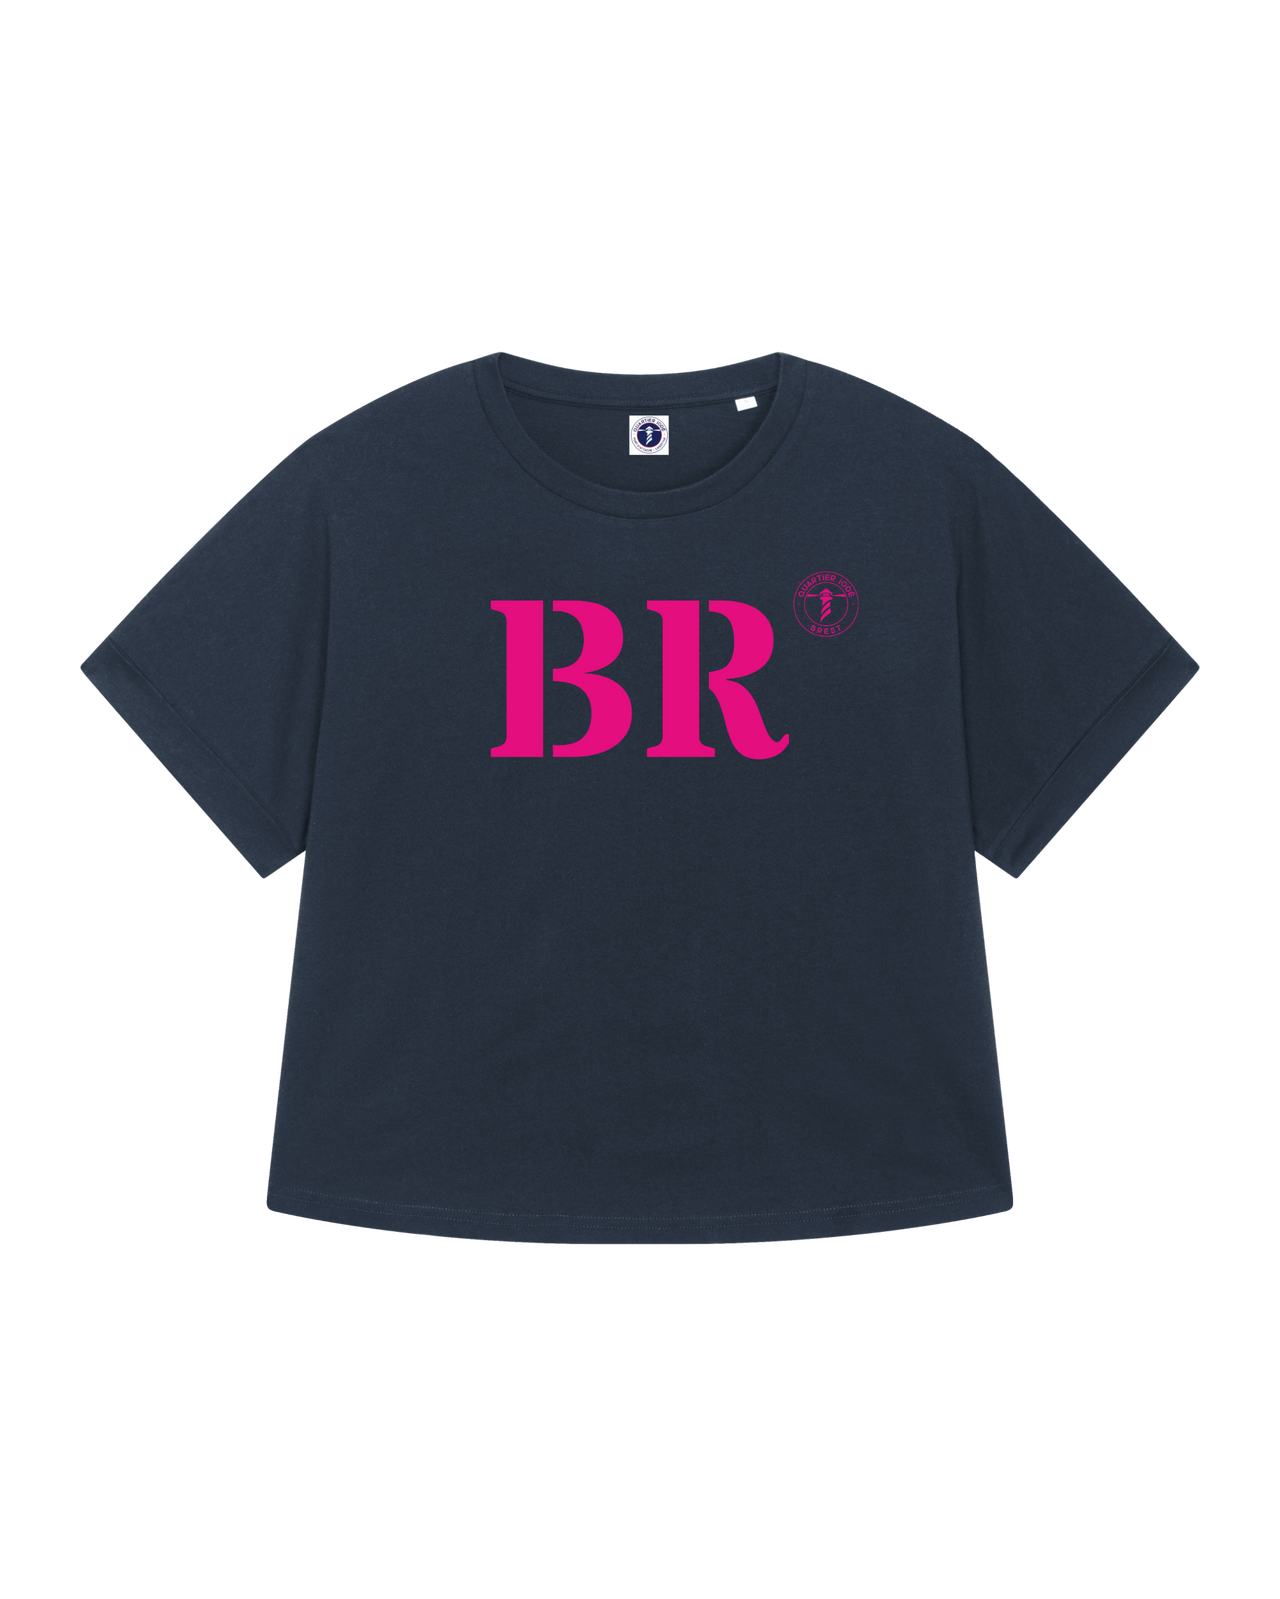 Tshirt Oversize breizh, de la marque bretonne Quartier iodé. Imprimé BR pour Brest. Idéal pour femme, style chic décontracté.